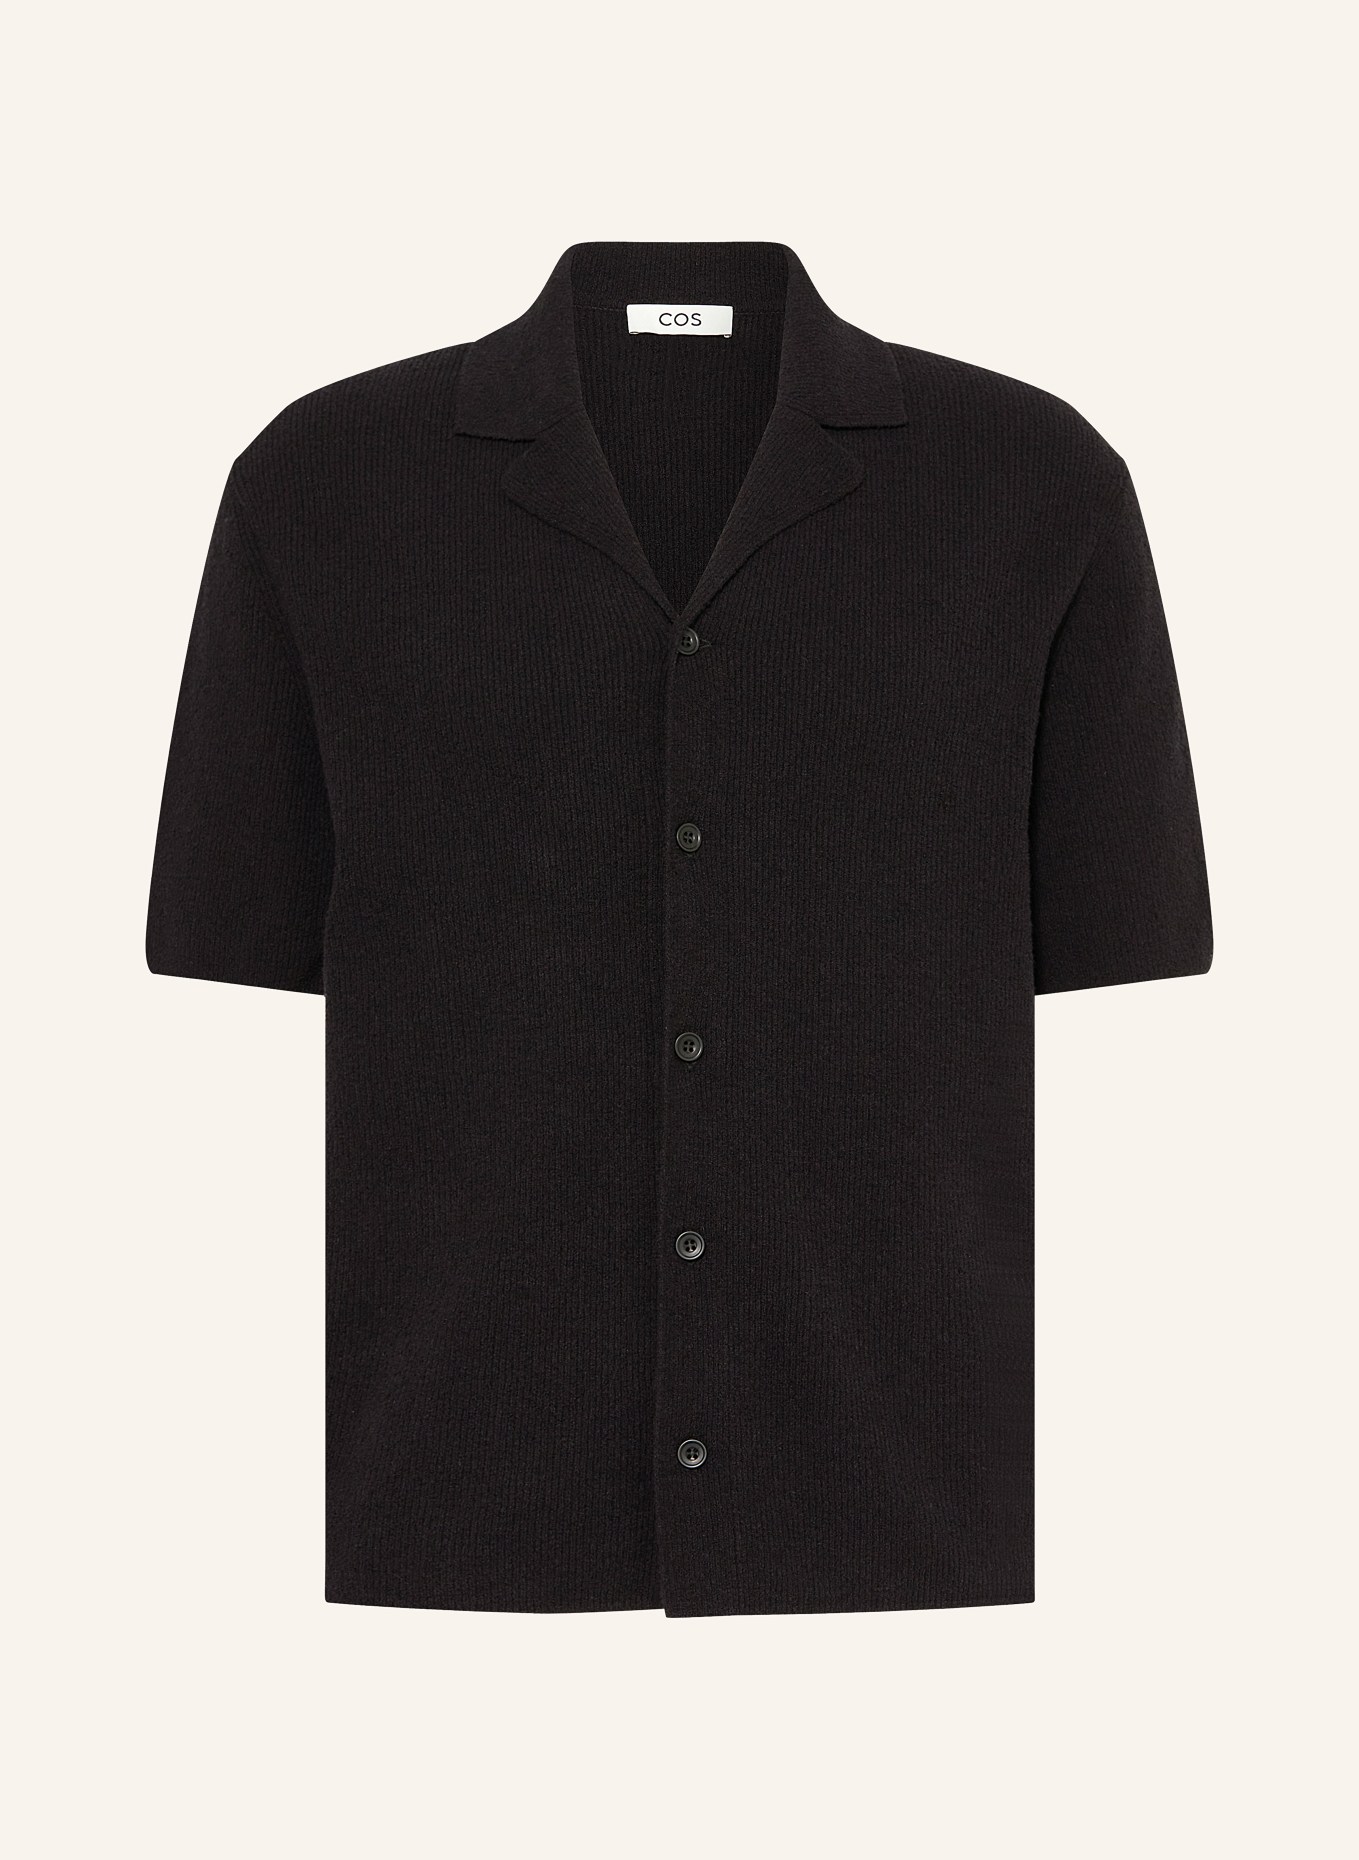 COS Knit shirt regular fit, Color: BLACK (Image 1)